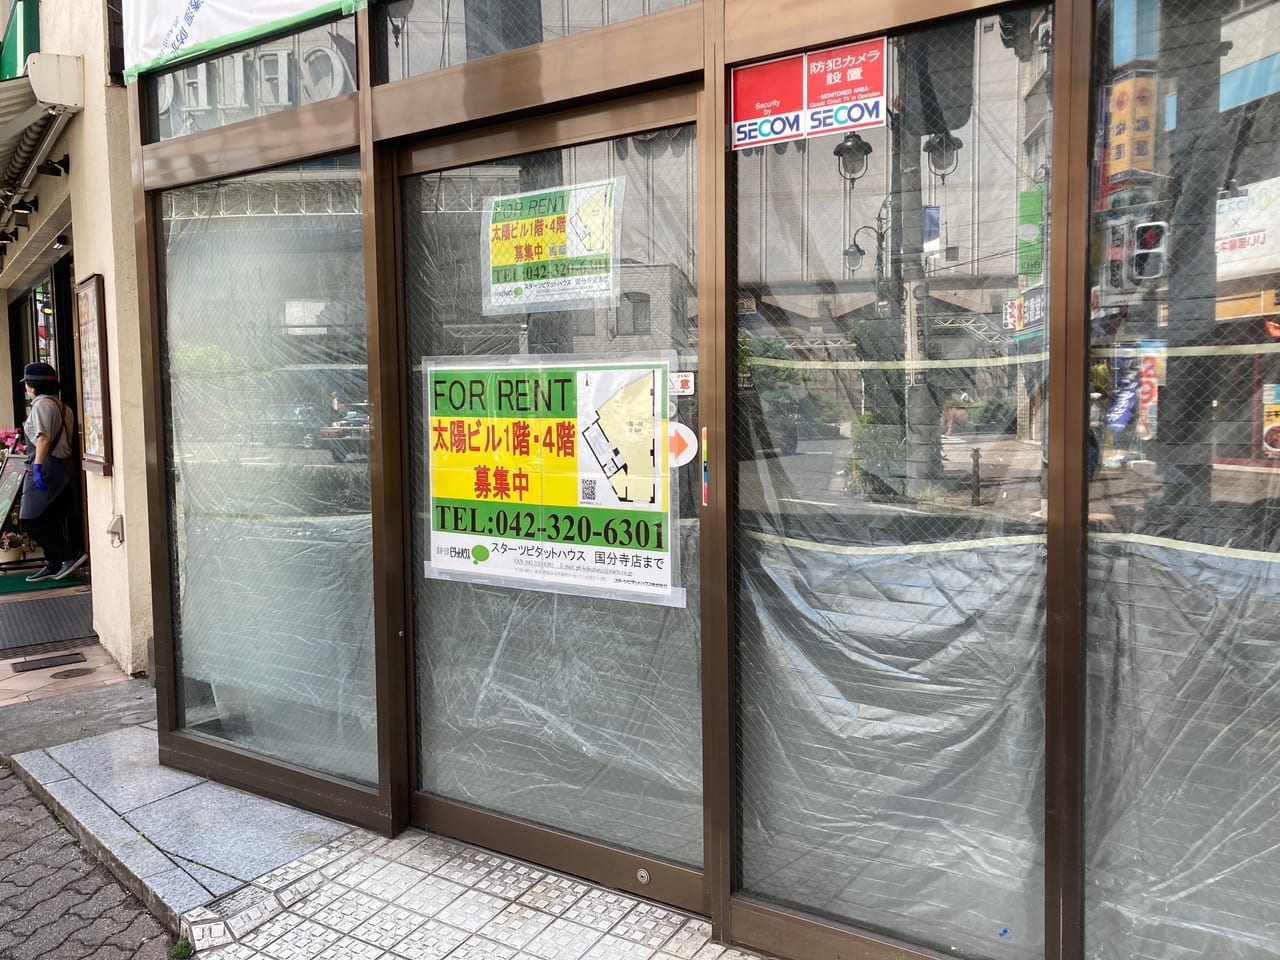 】国分寺駅南口駅前『岡部眼科』と『サンメイト』が3月末で閉店していました。